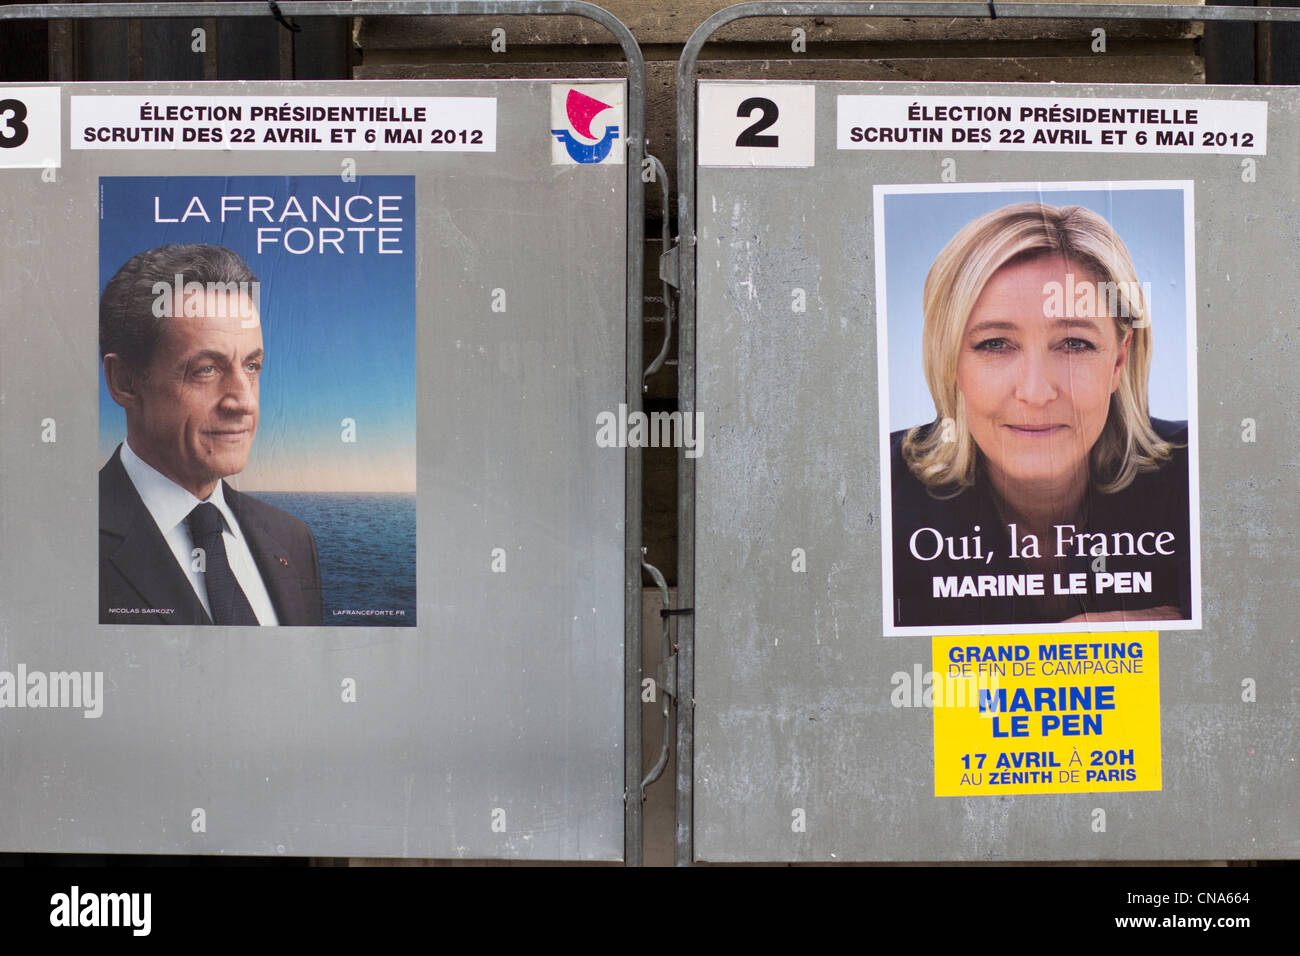 Sarkozy et Le Pen, des affiches électorales, Paris, avril 2012, France Banque D'Images